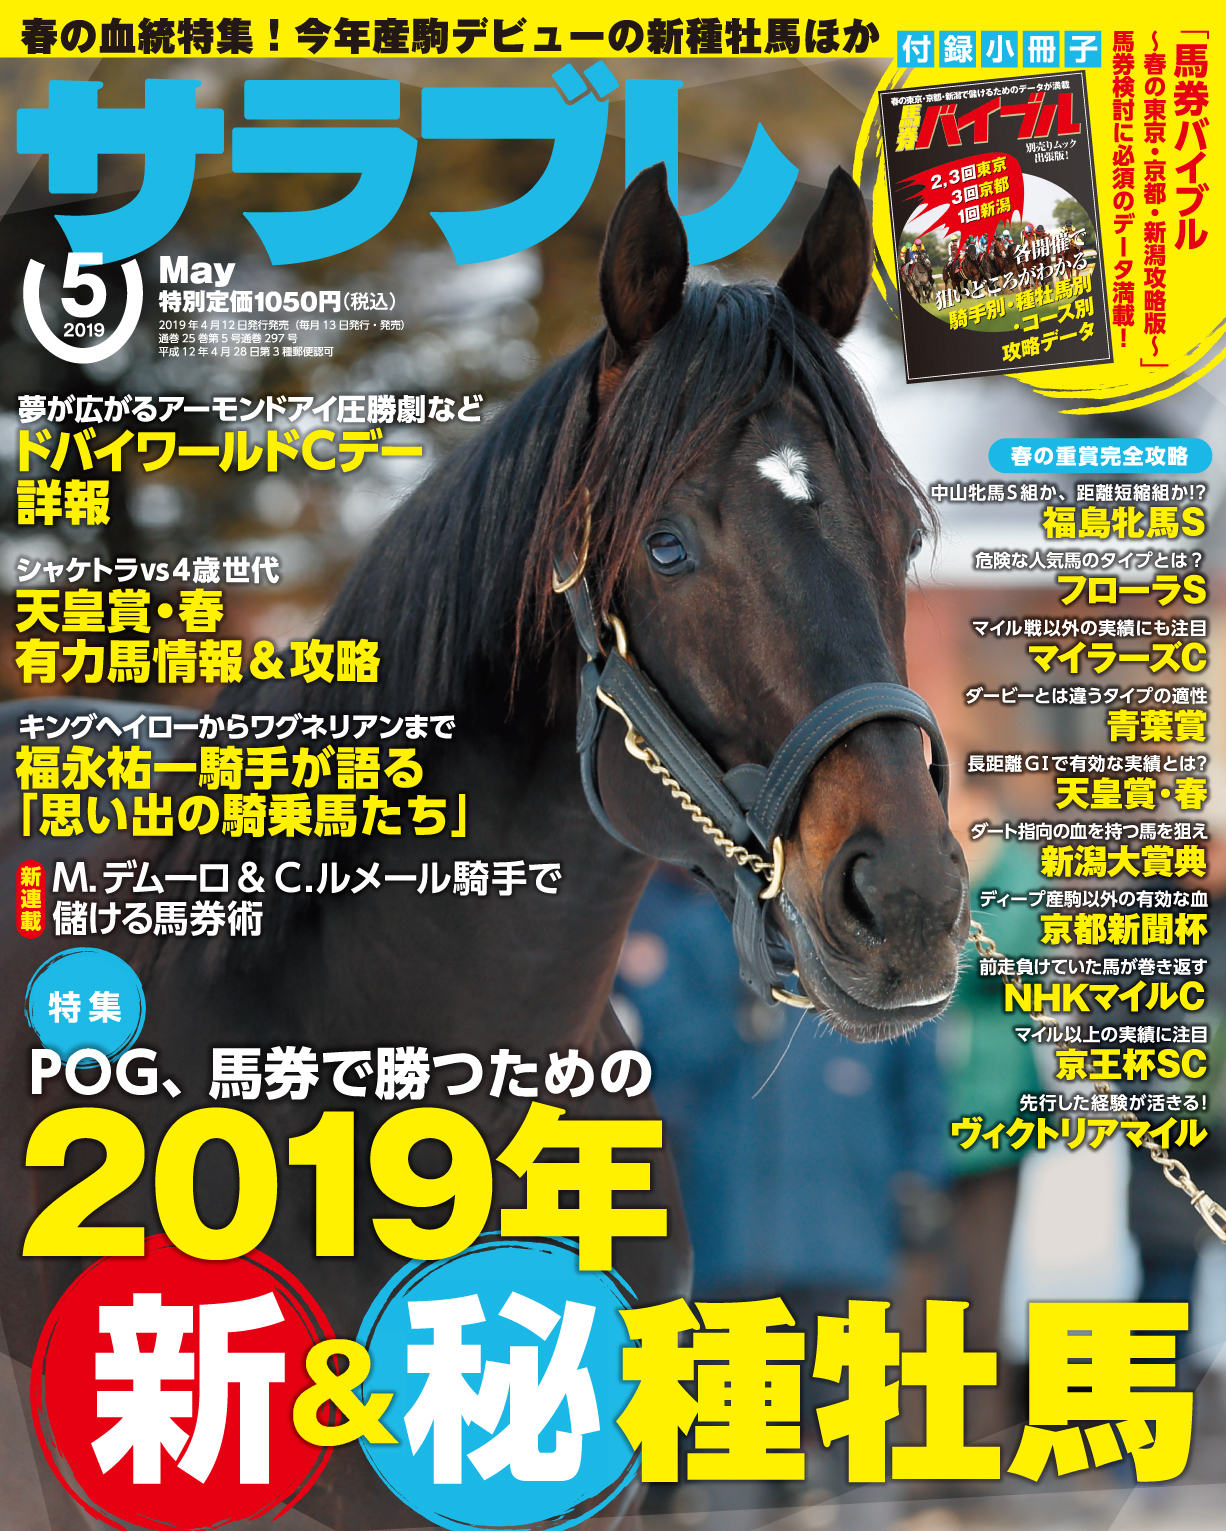 今年産駒デビューの新種牡馬は大物揃い 春の血統特集 株式会社kadokawaのプレスリリース